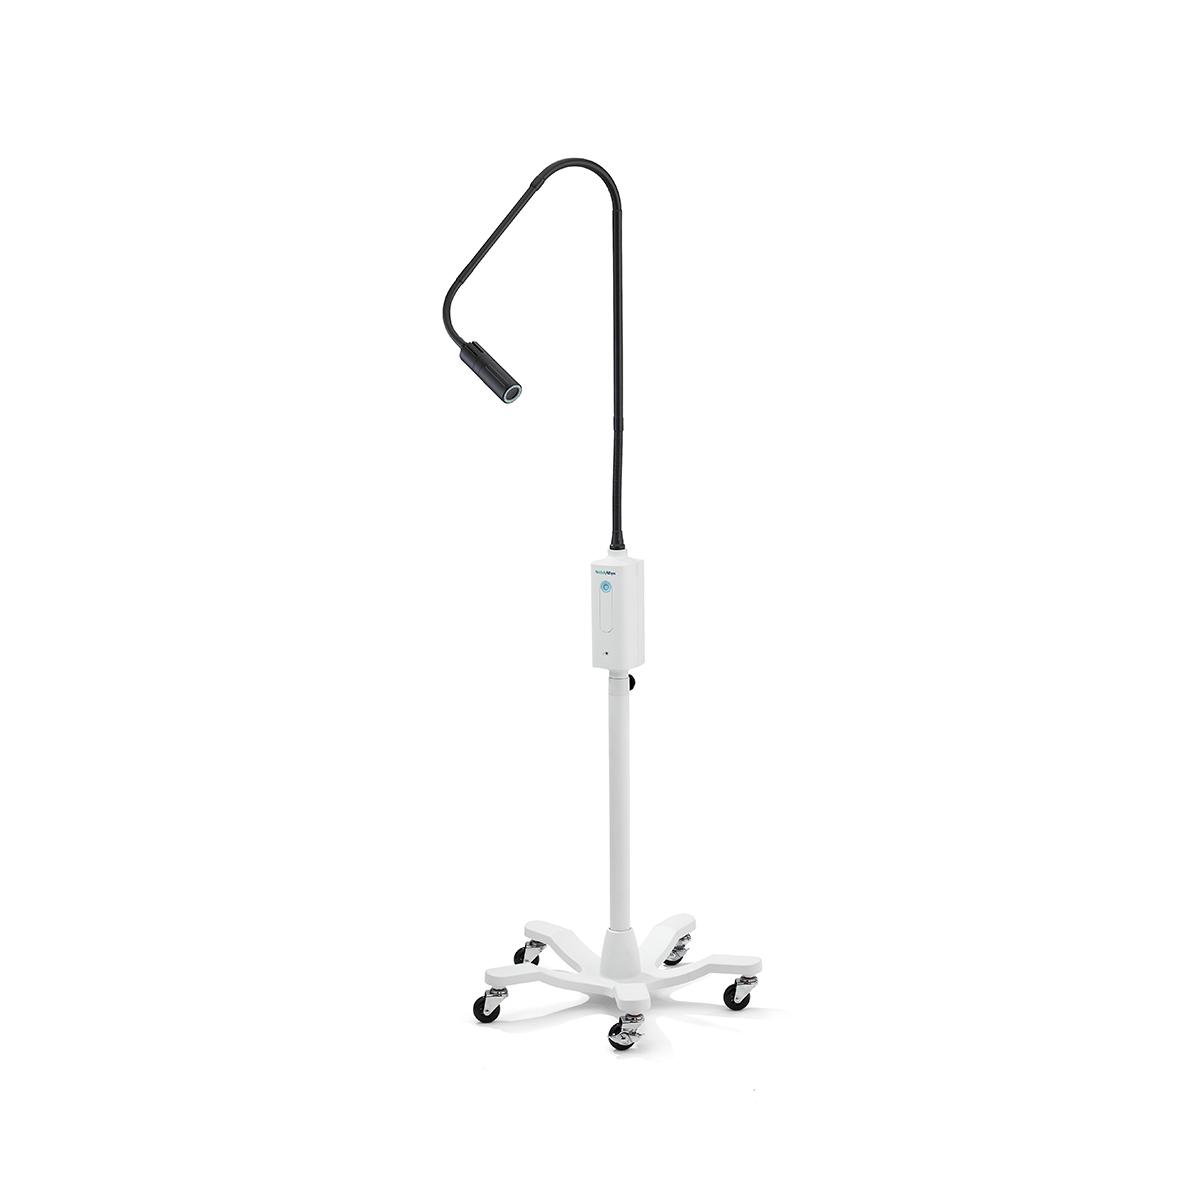 Weterynaryjna lampa diagnostyczna Green Series IV na mobilnym stojaku z kółkami